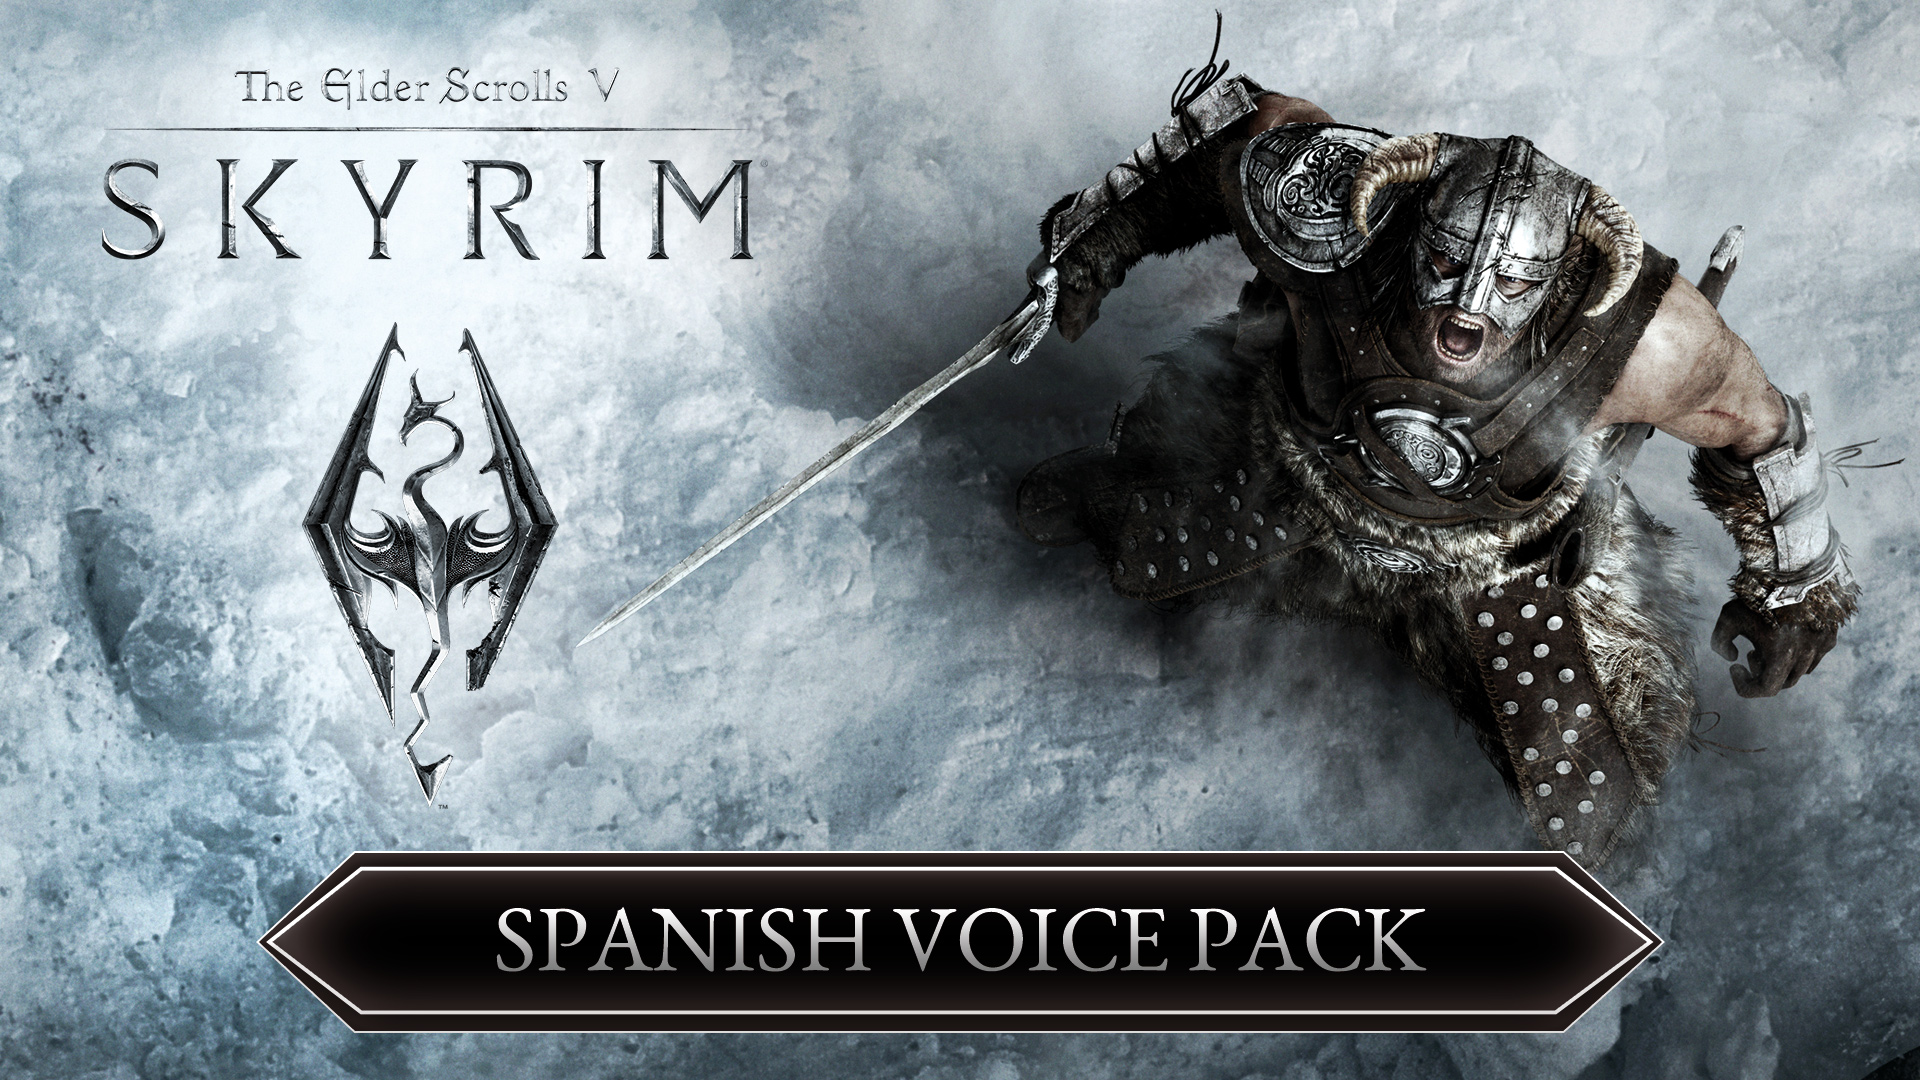 The Elder Scrolls V: Skyrim Spanish Voice Pack 